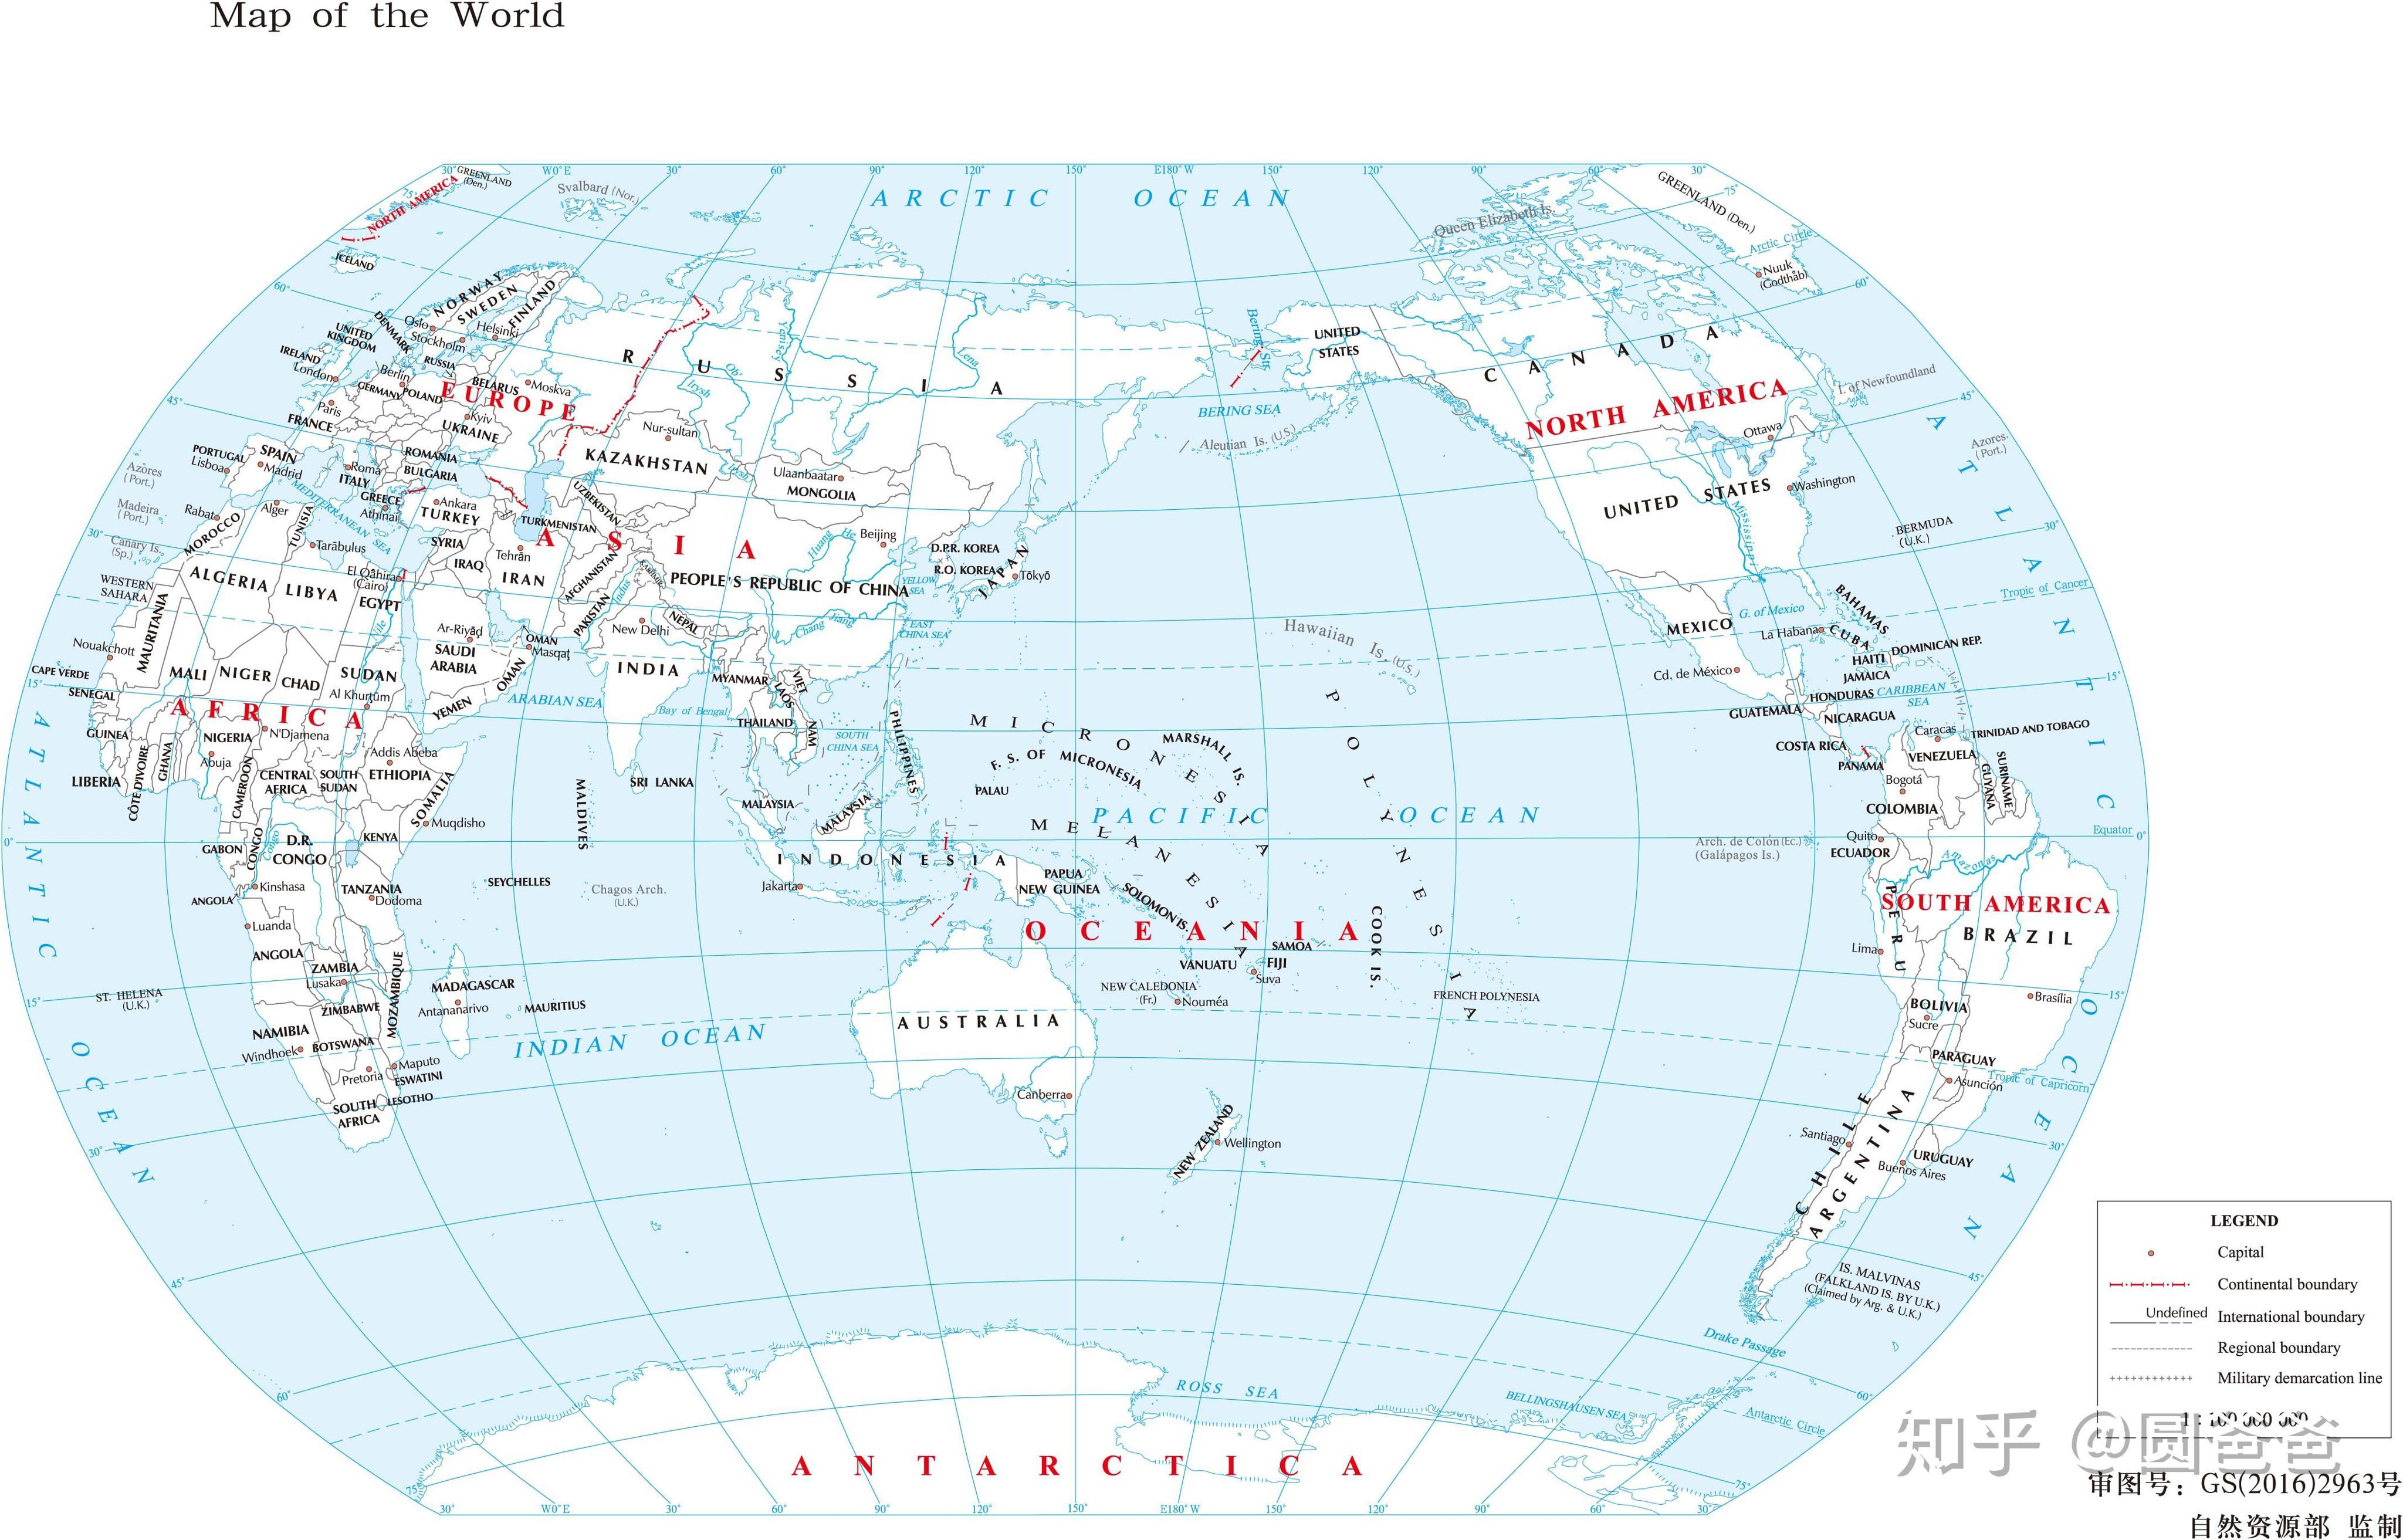 1亿全白底世界地图1:1亿世界地形图然后是g20国家分布图:g20国家分布